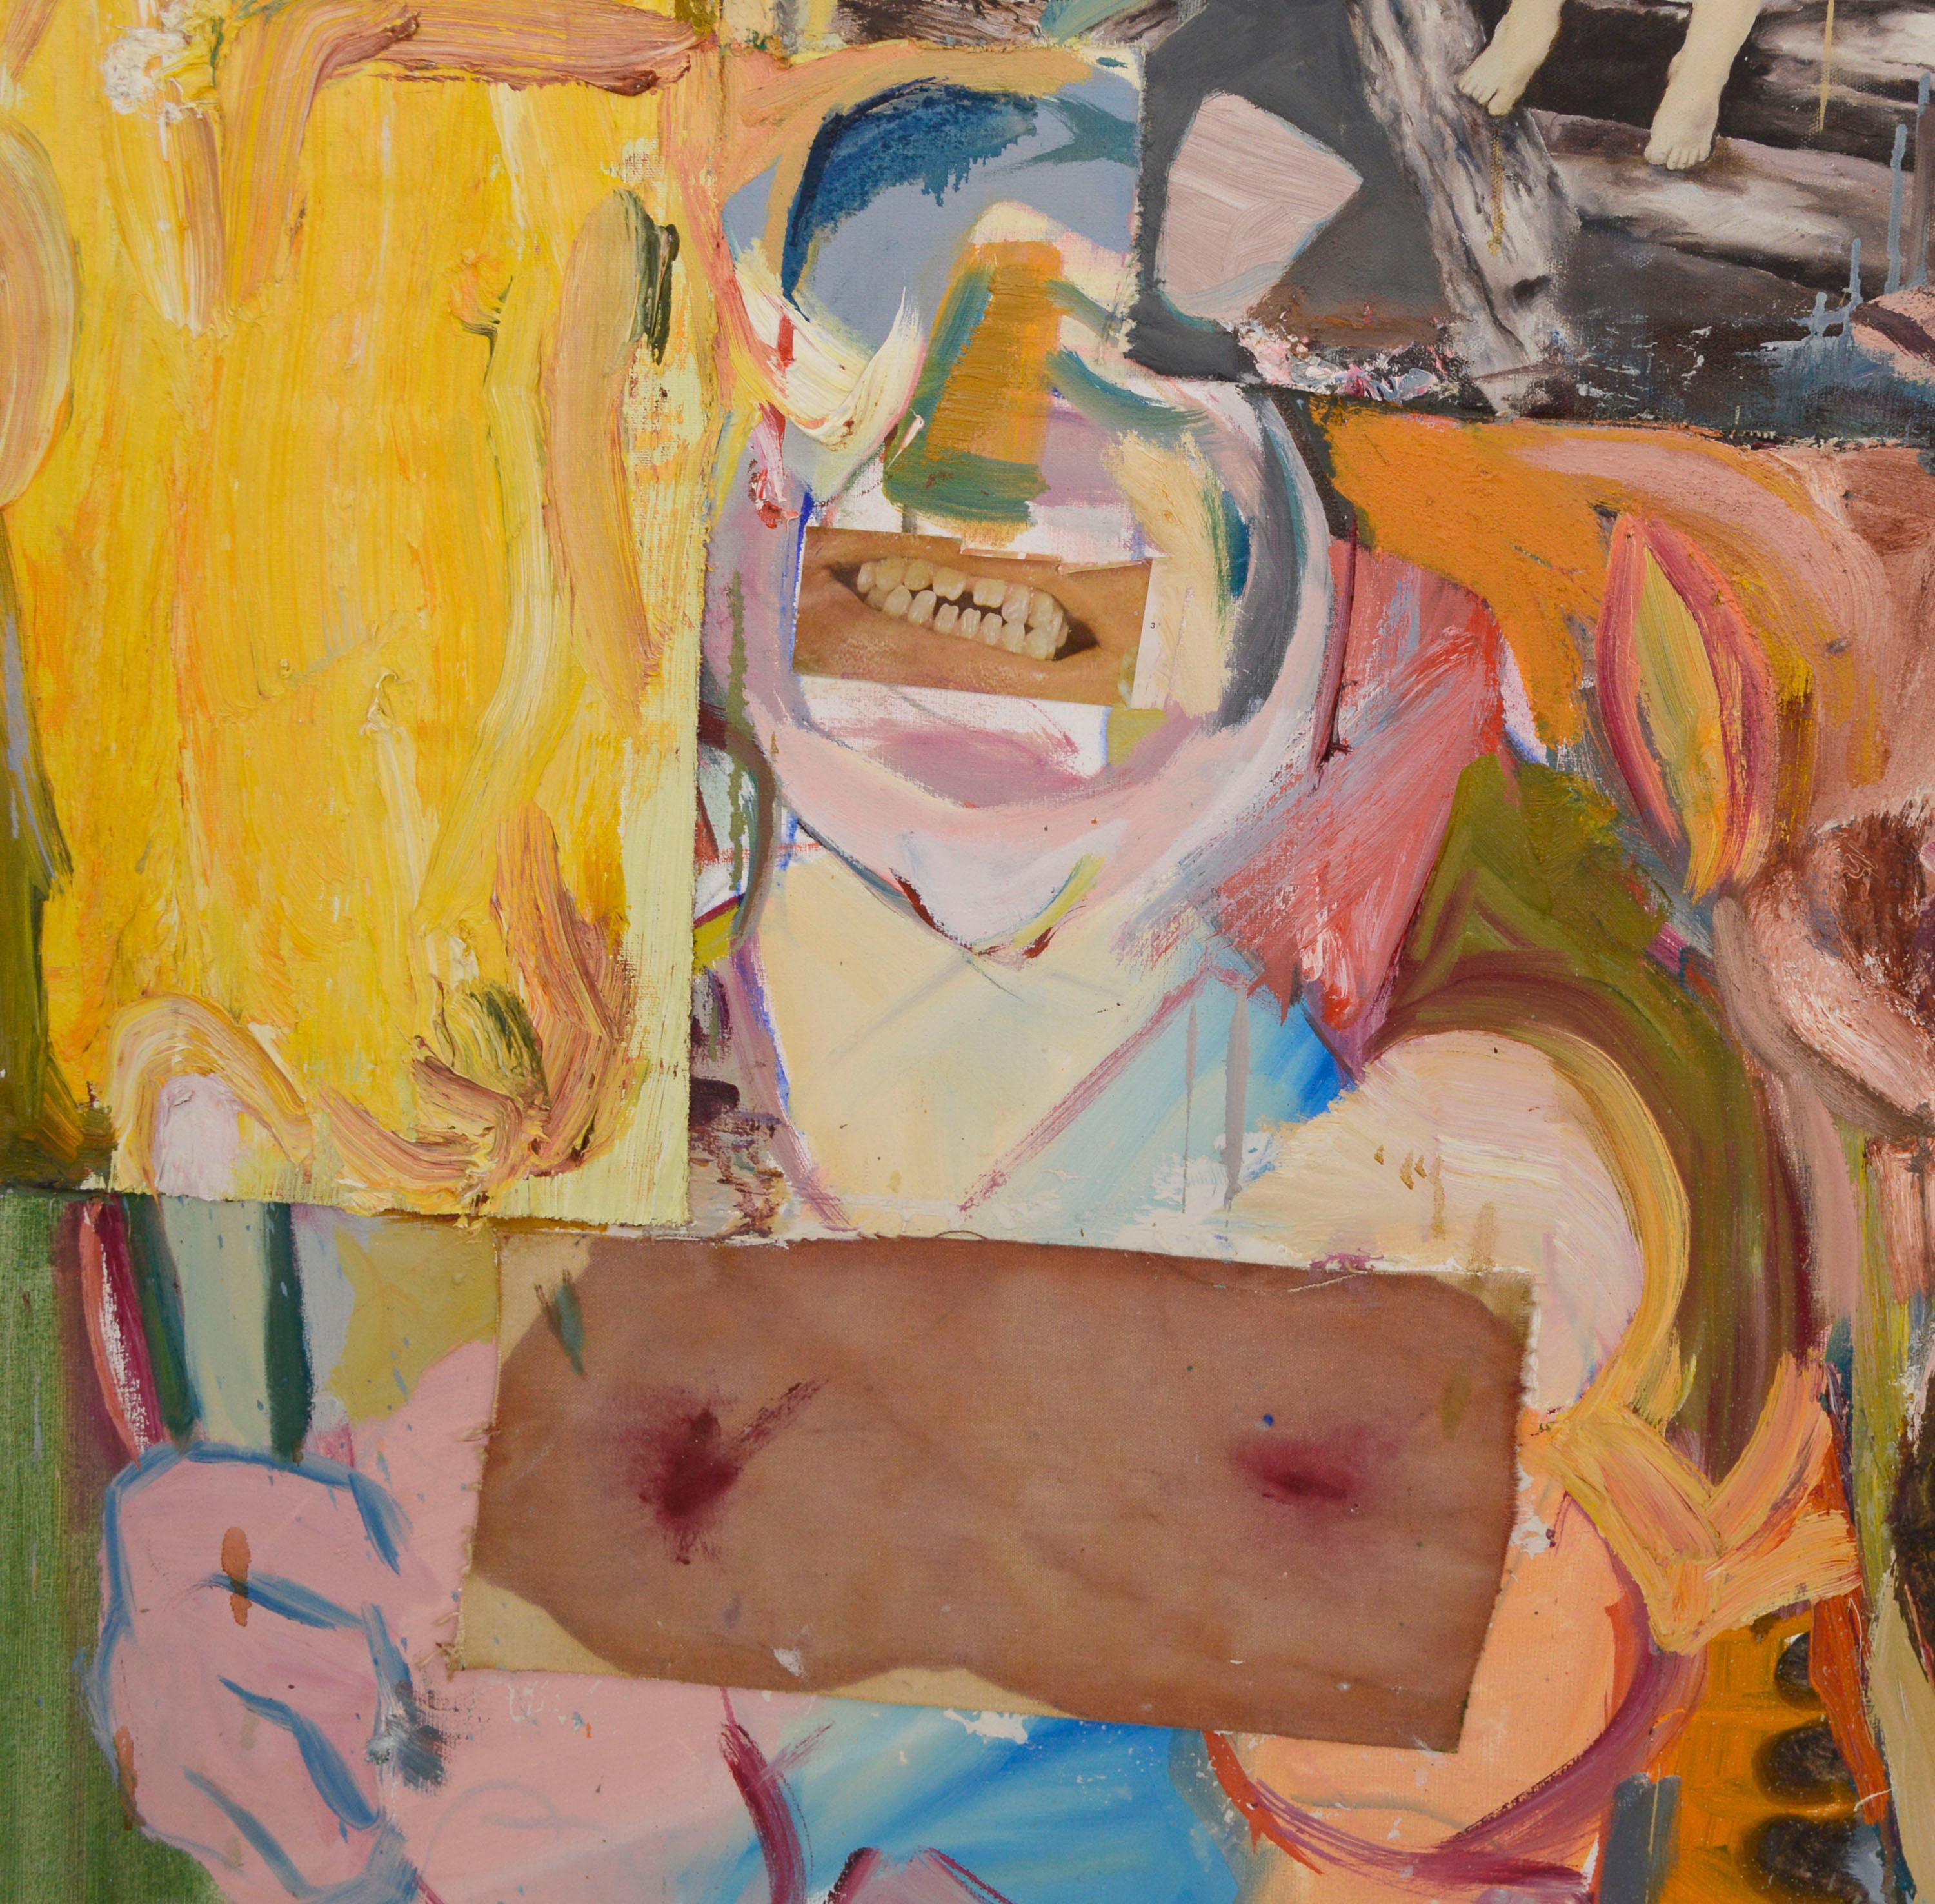 Rosa abstrakt-expressionistische Figurative Komposition mit Collage, großformatig, zeitgenössisch (Braun), Abstract Painting, von Michael Pauker 